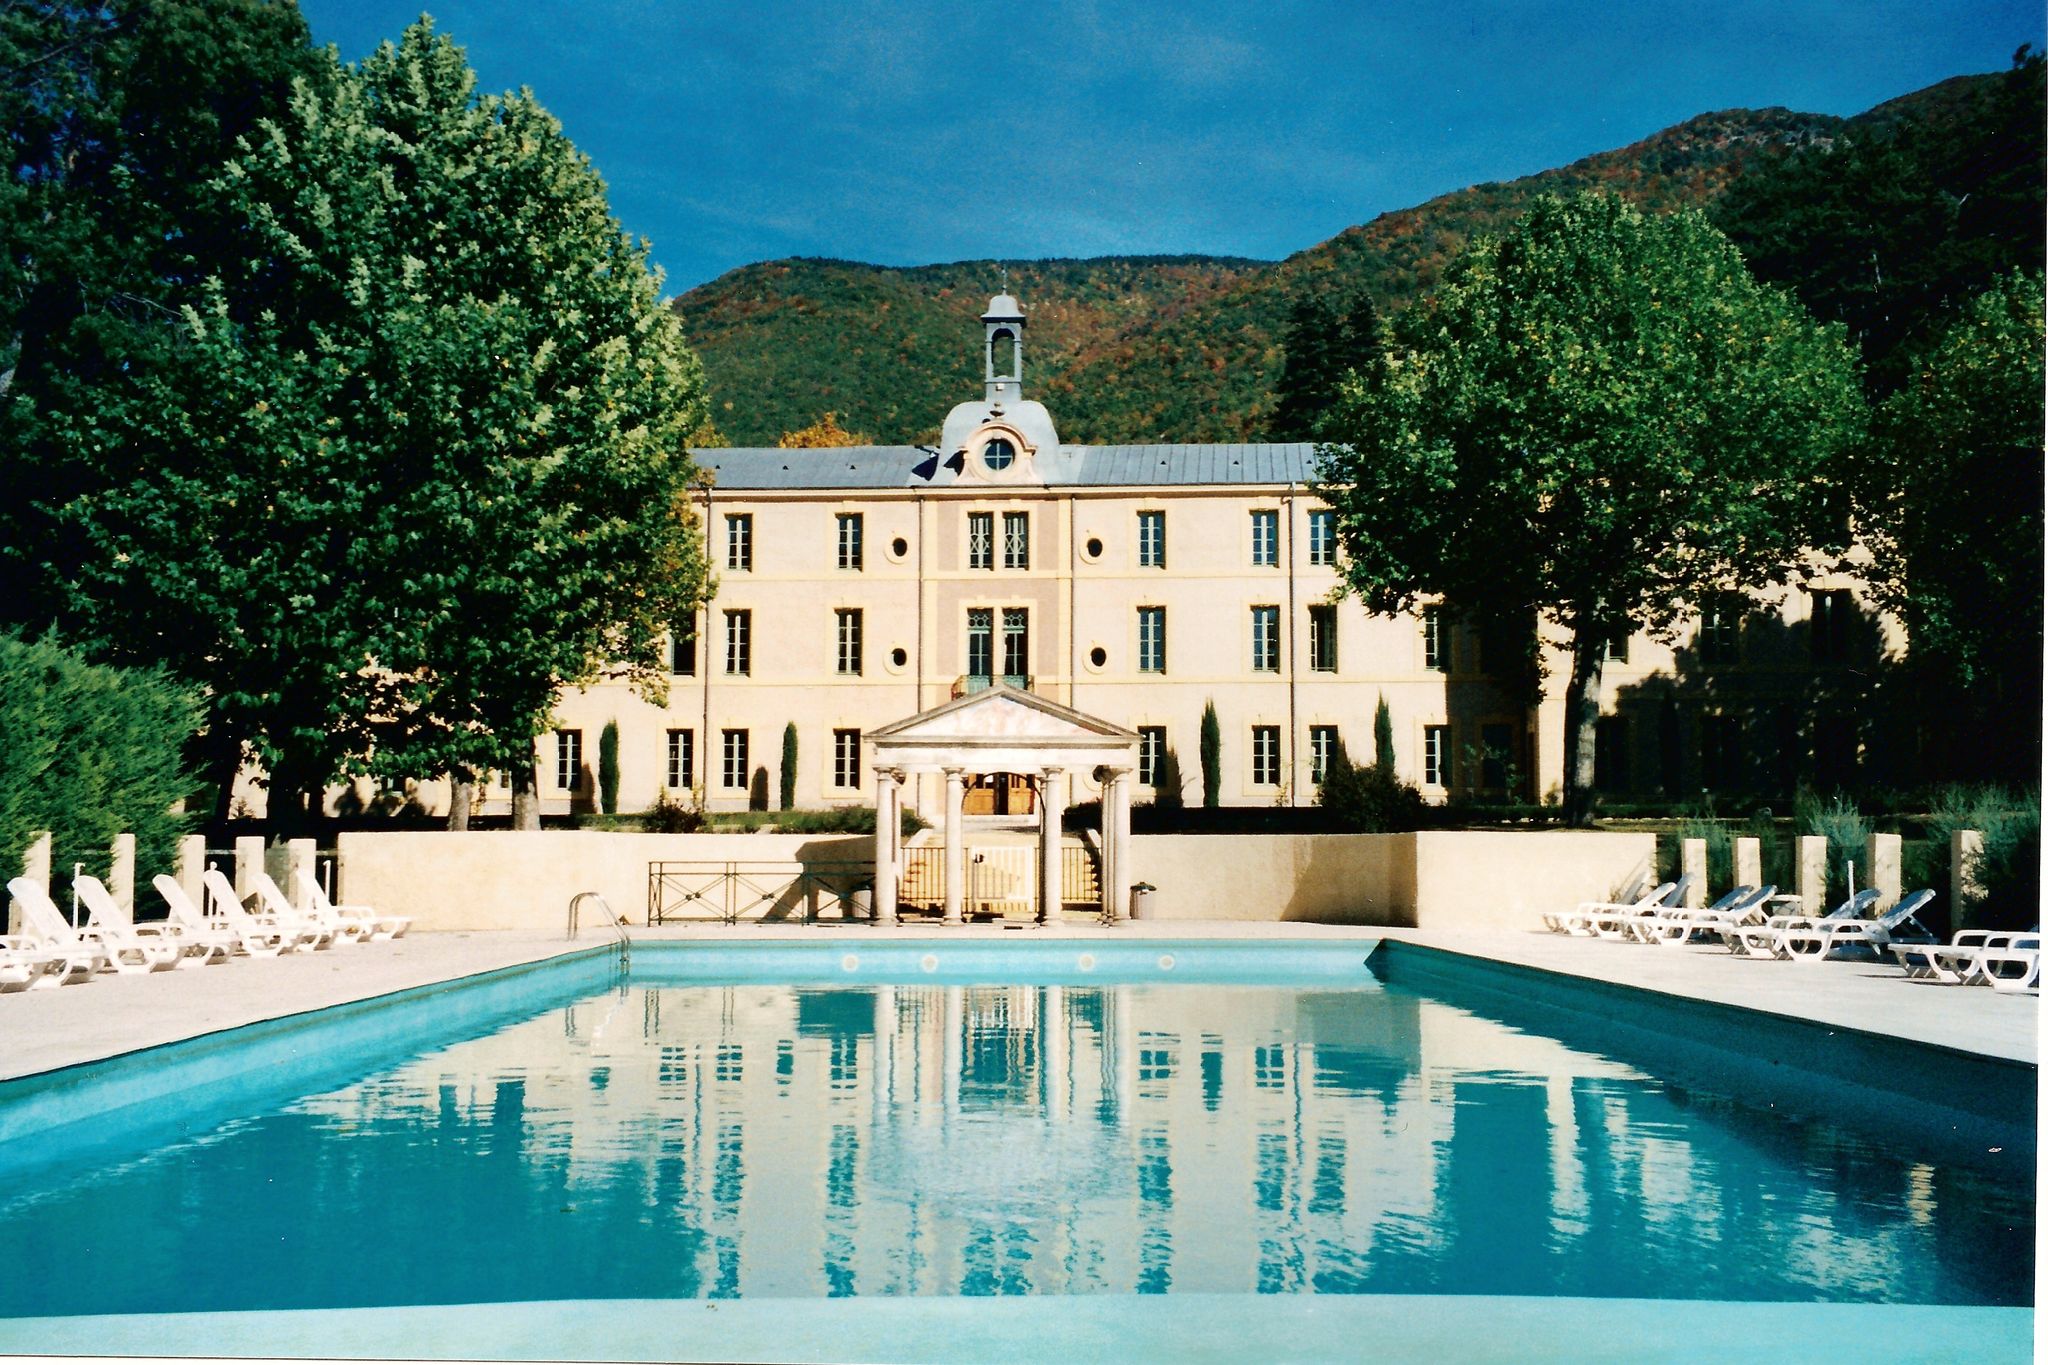 Appartement de rêve dans le sud de la France avec piscine